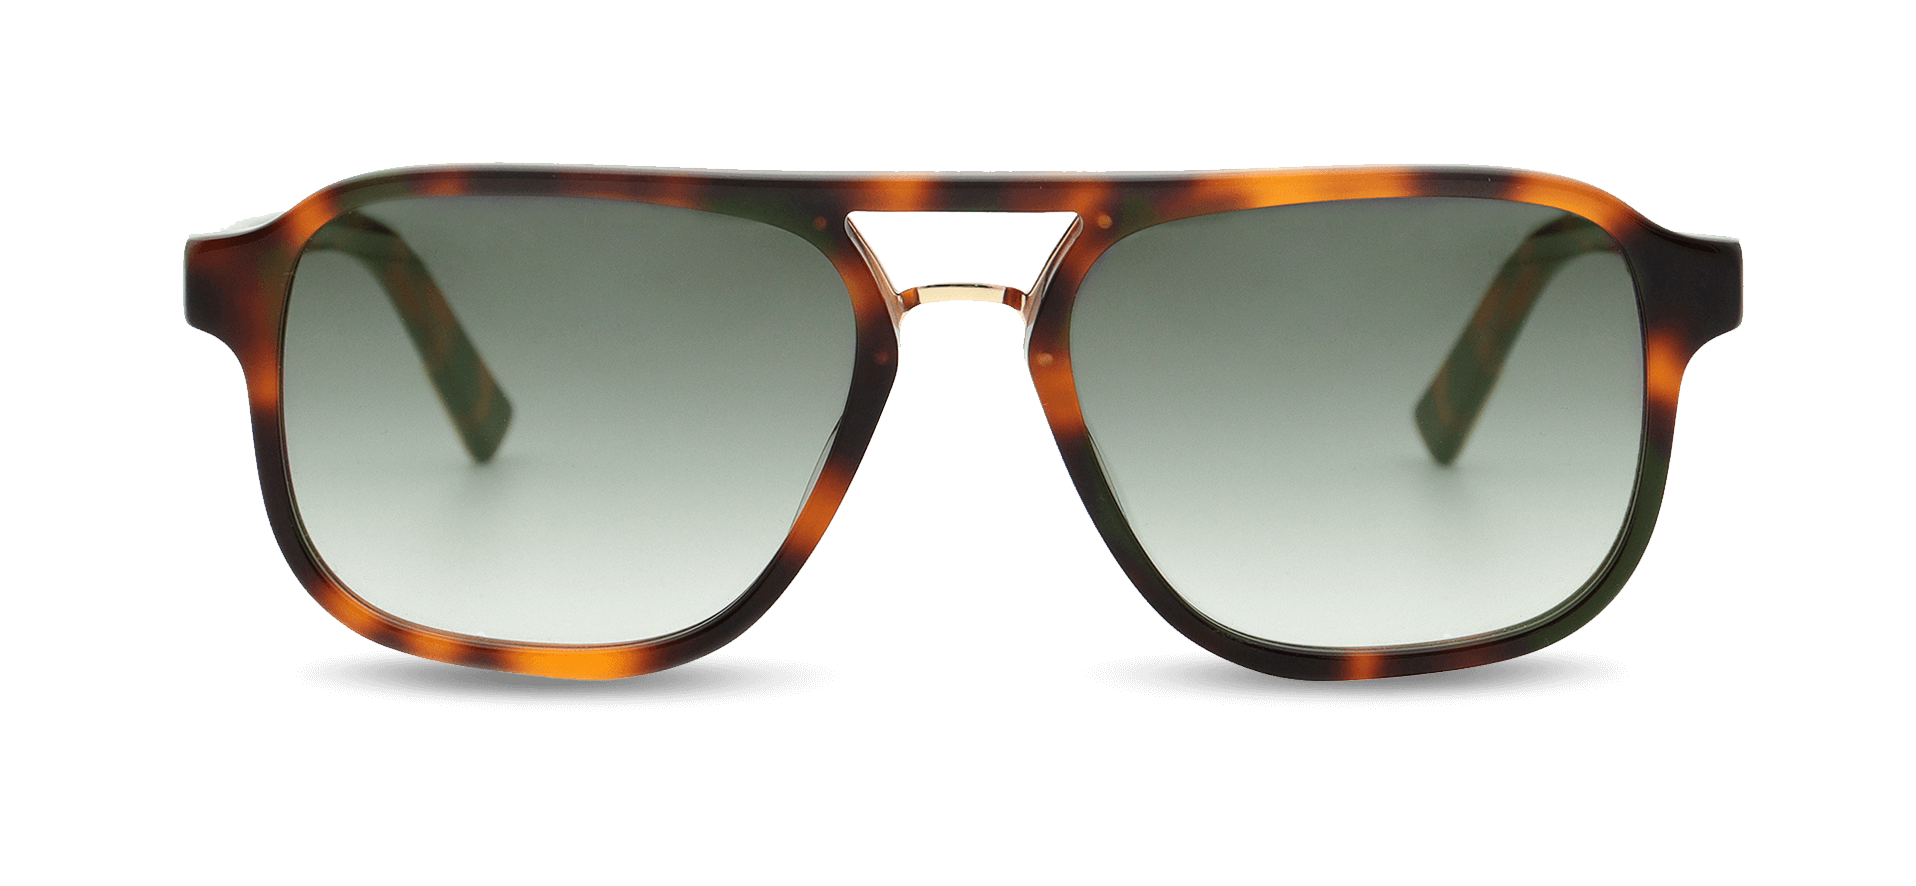 Double bridge sunglasses